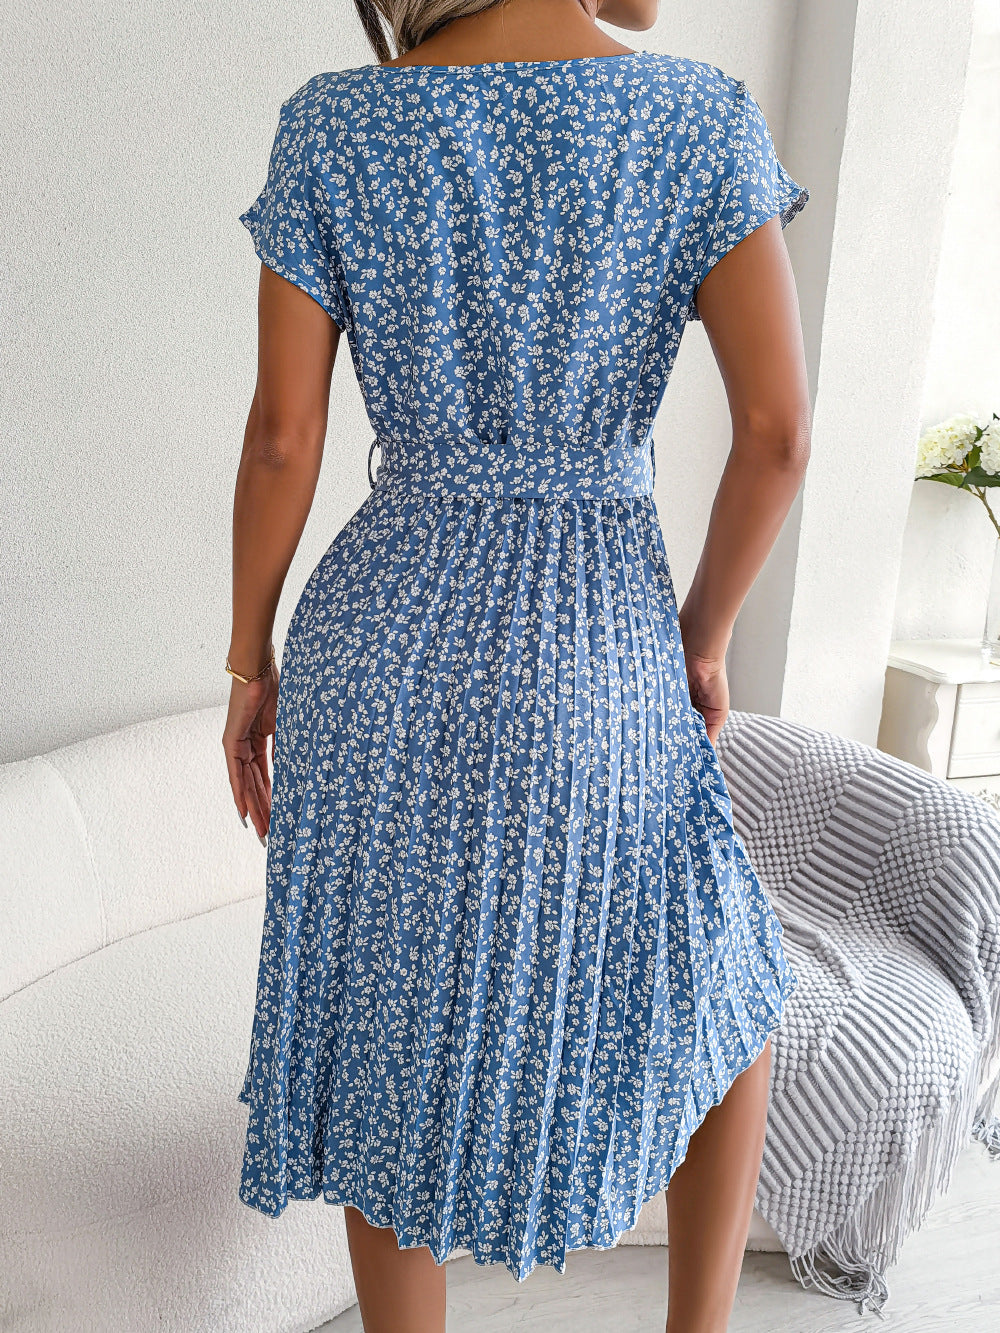 Summer Short Sleeve Floral Print Dress For Women